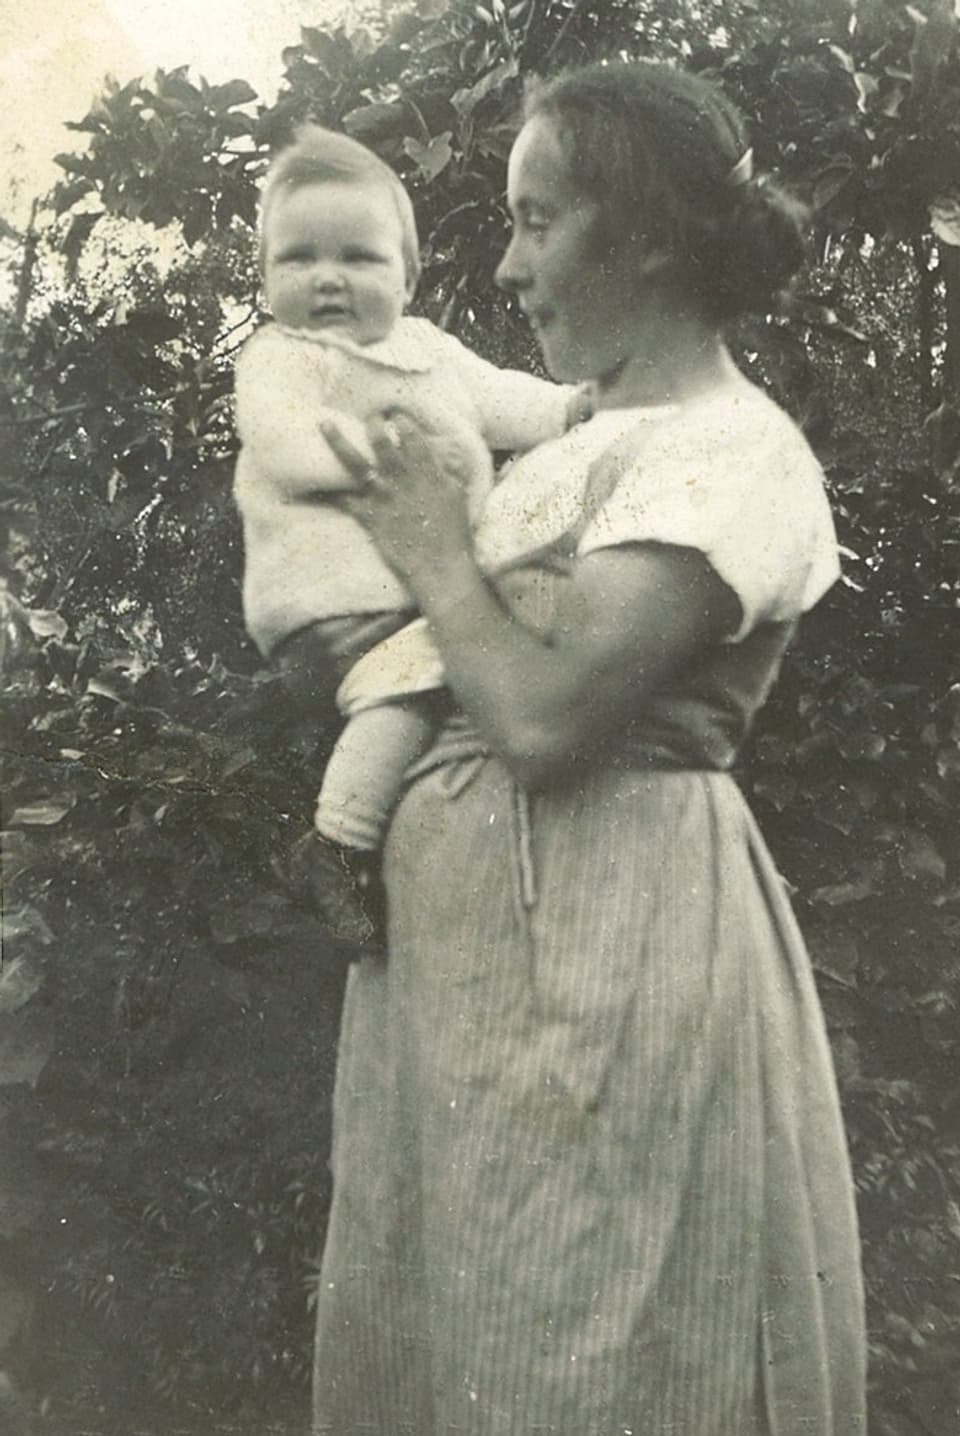 Mutter mit Baby auf Arm.